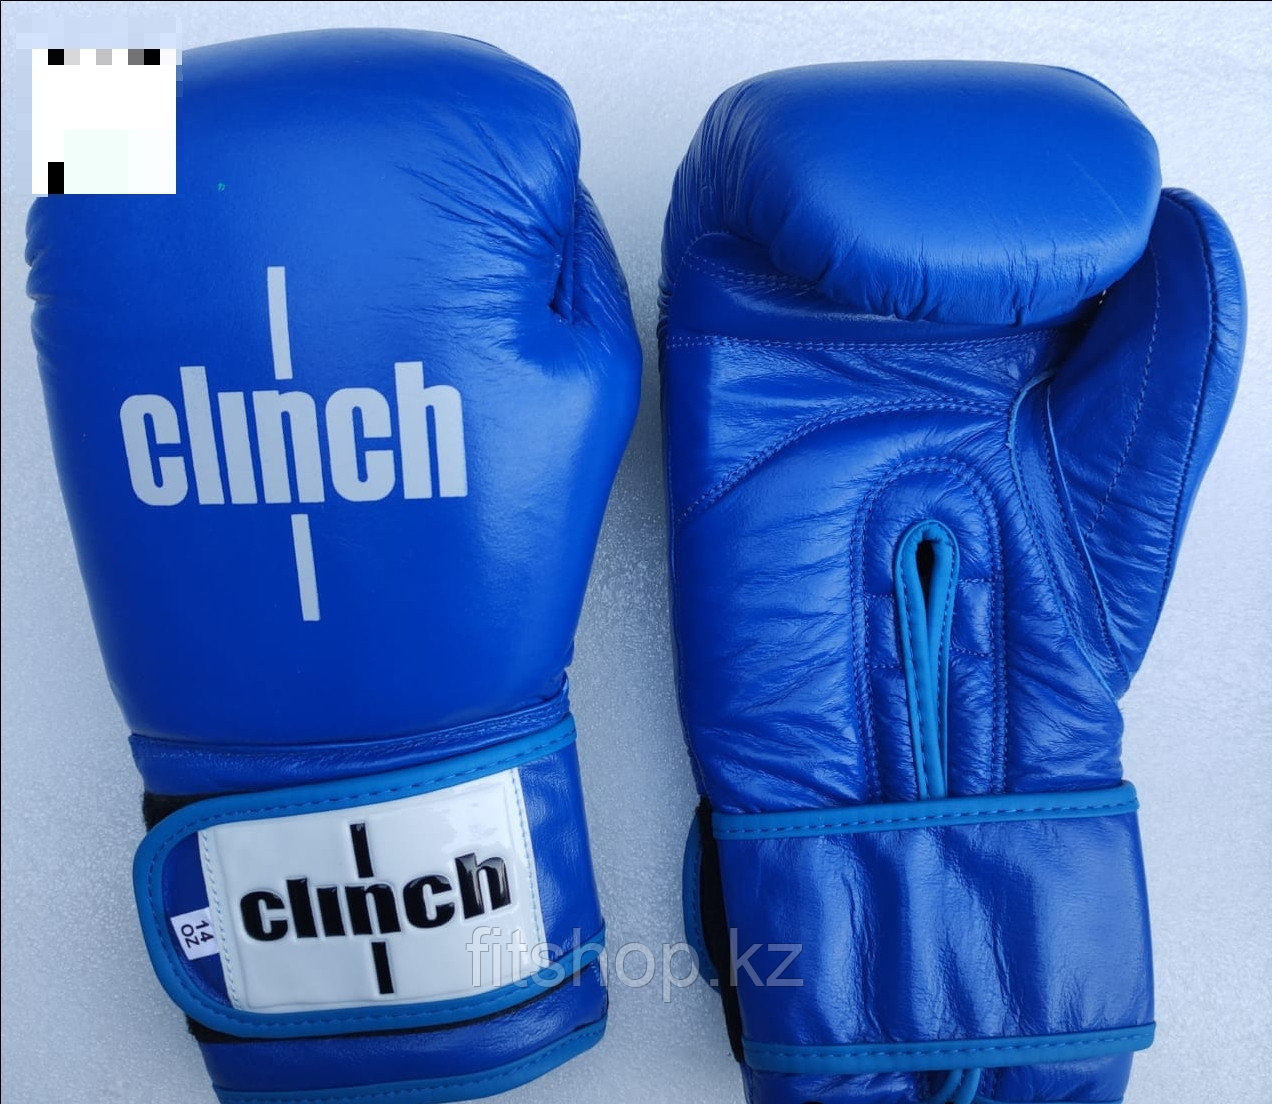 Боксерские перчатки Clinch синие (кожа)